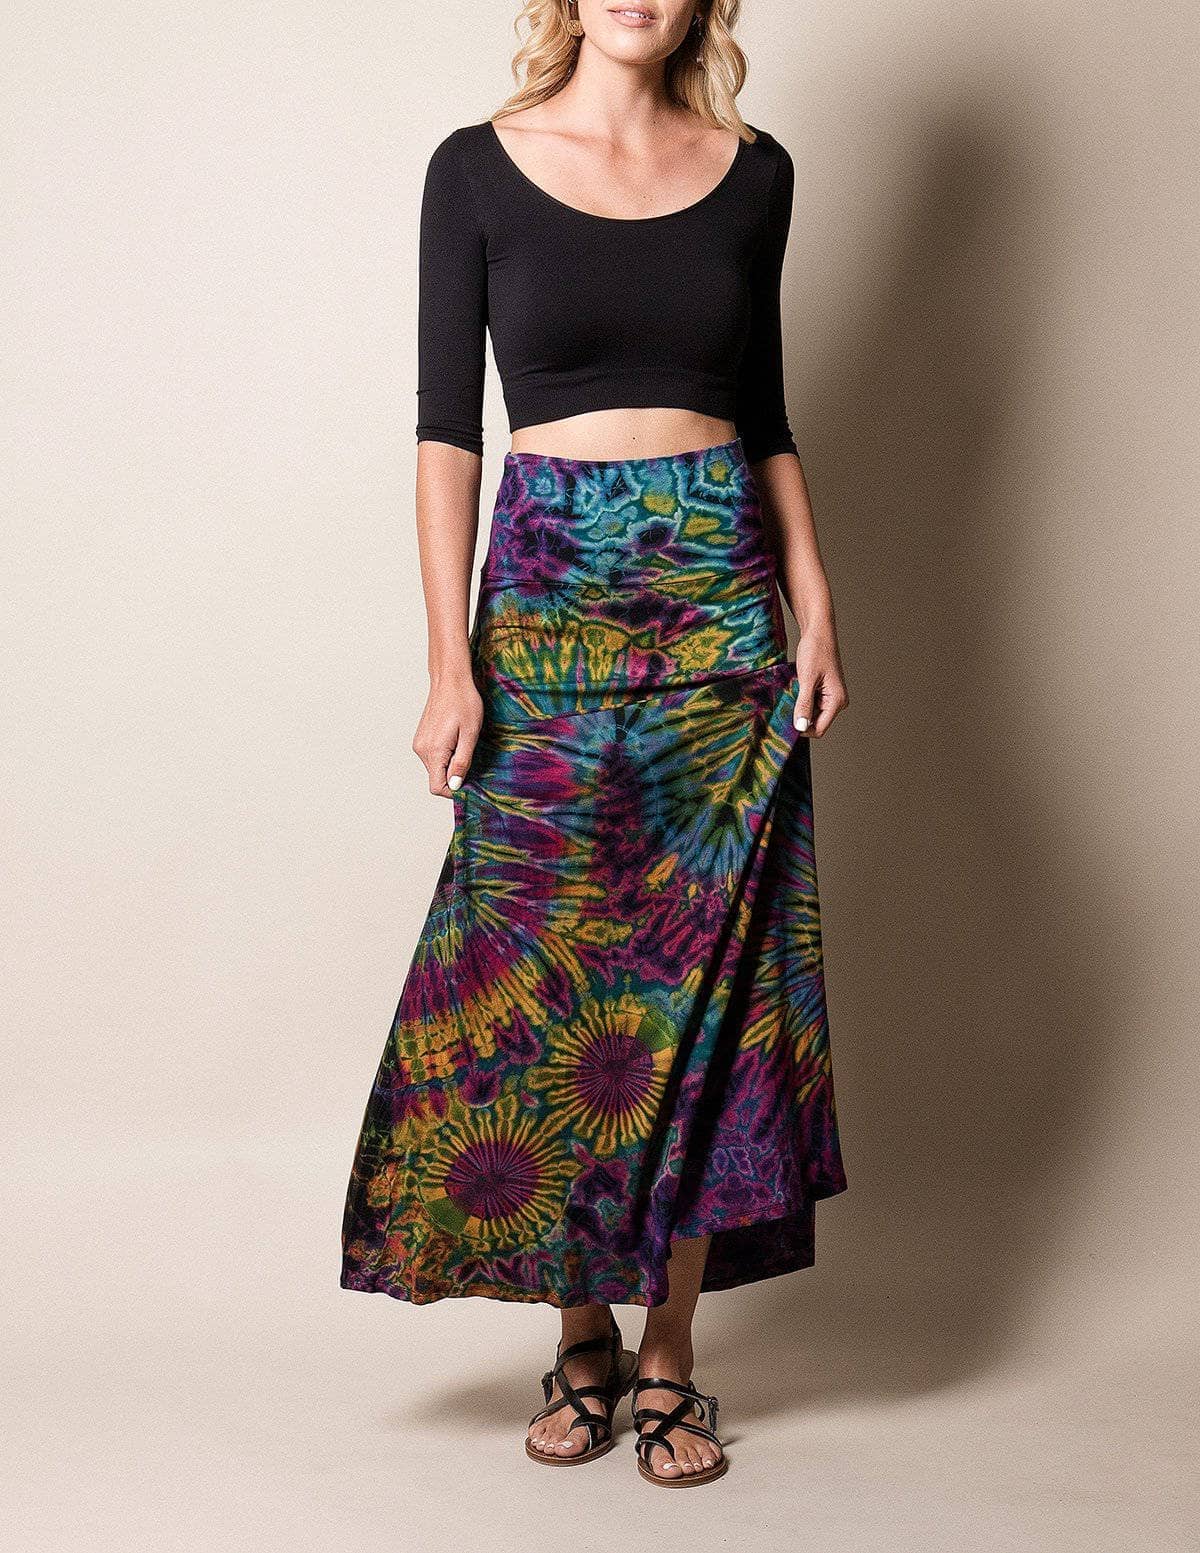 Buy Tie Dye Skirt Festival Skirt Hand Dyed Maxi Skirt Hippie Online in  India  Etsy